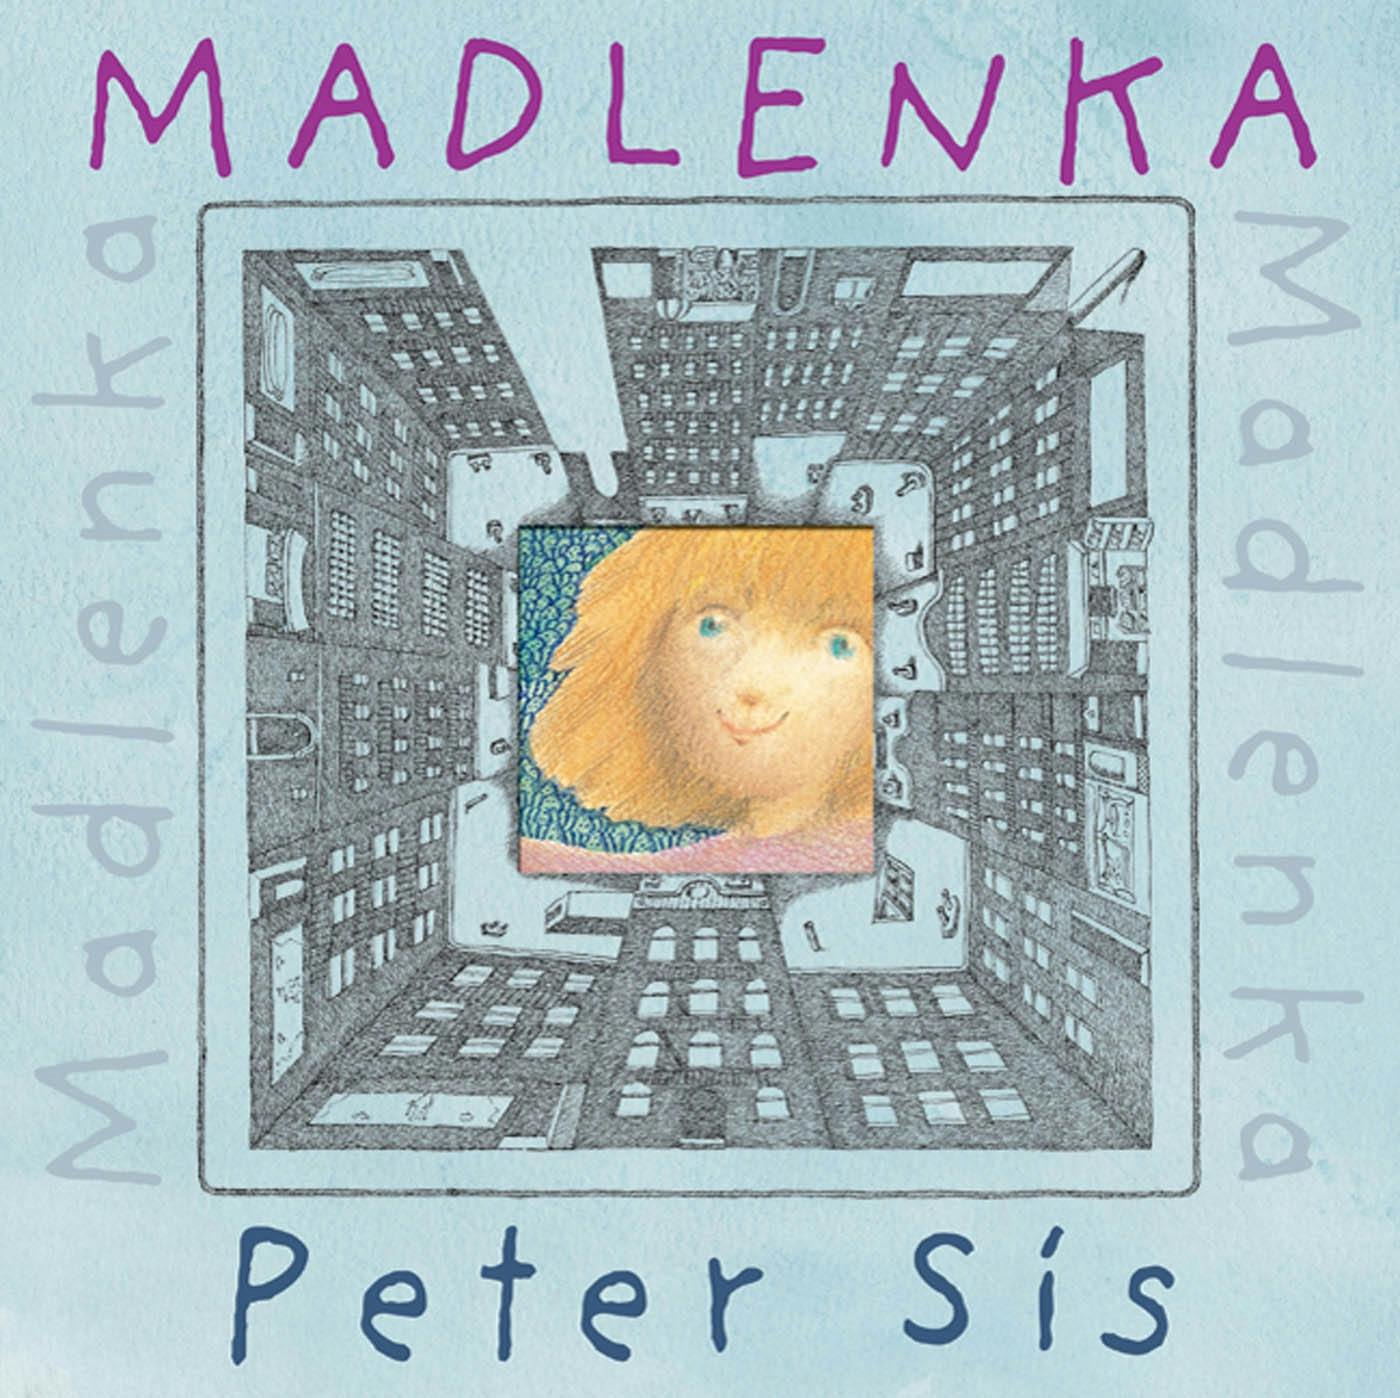 Image of Madlenka